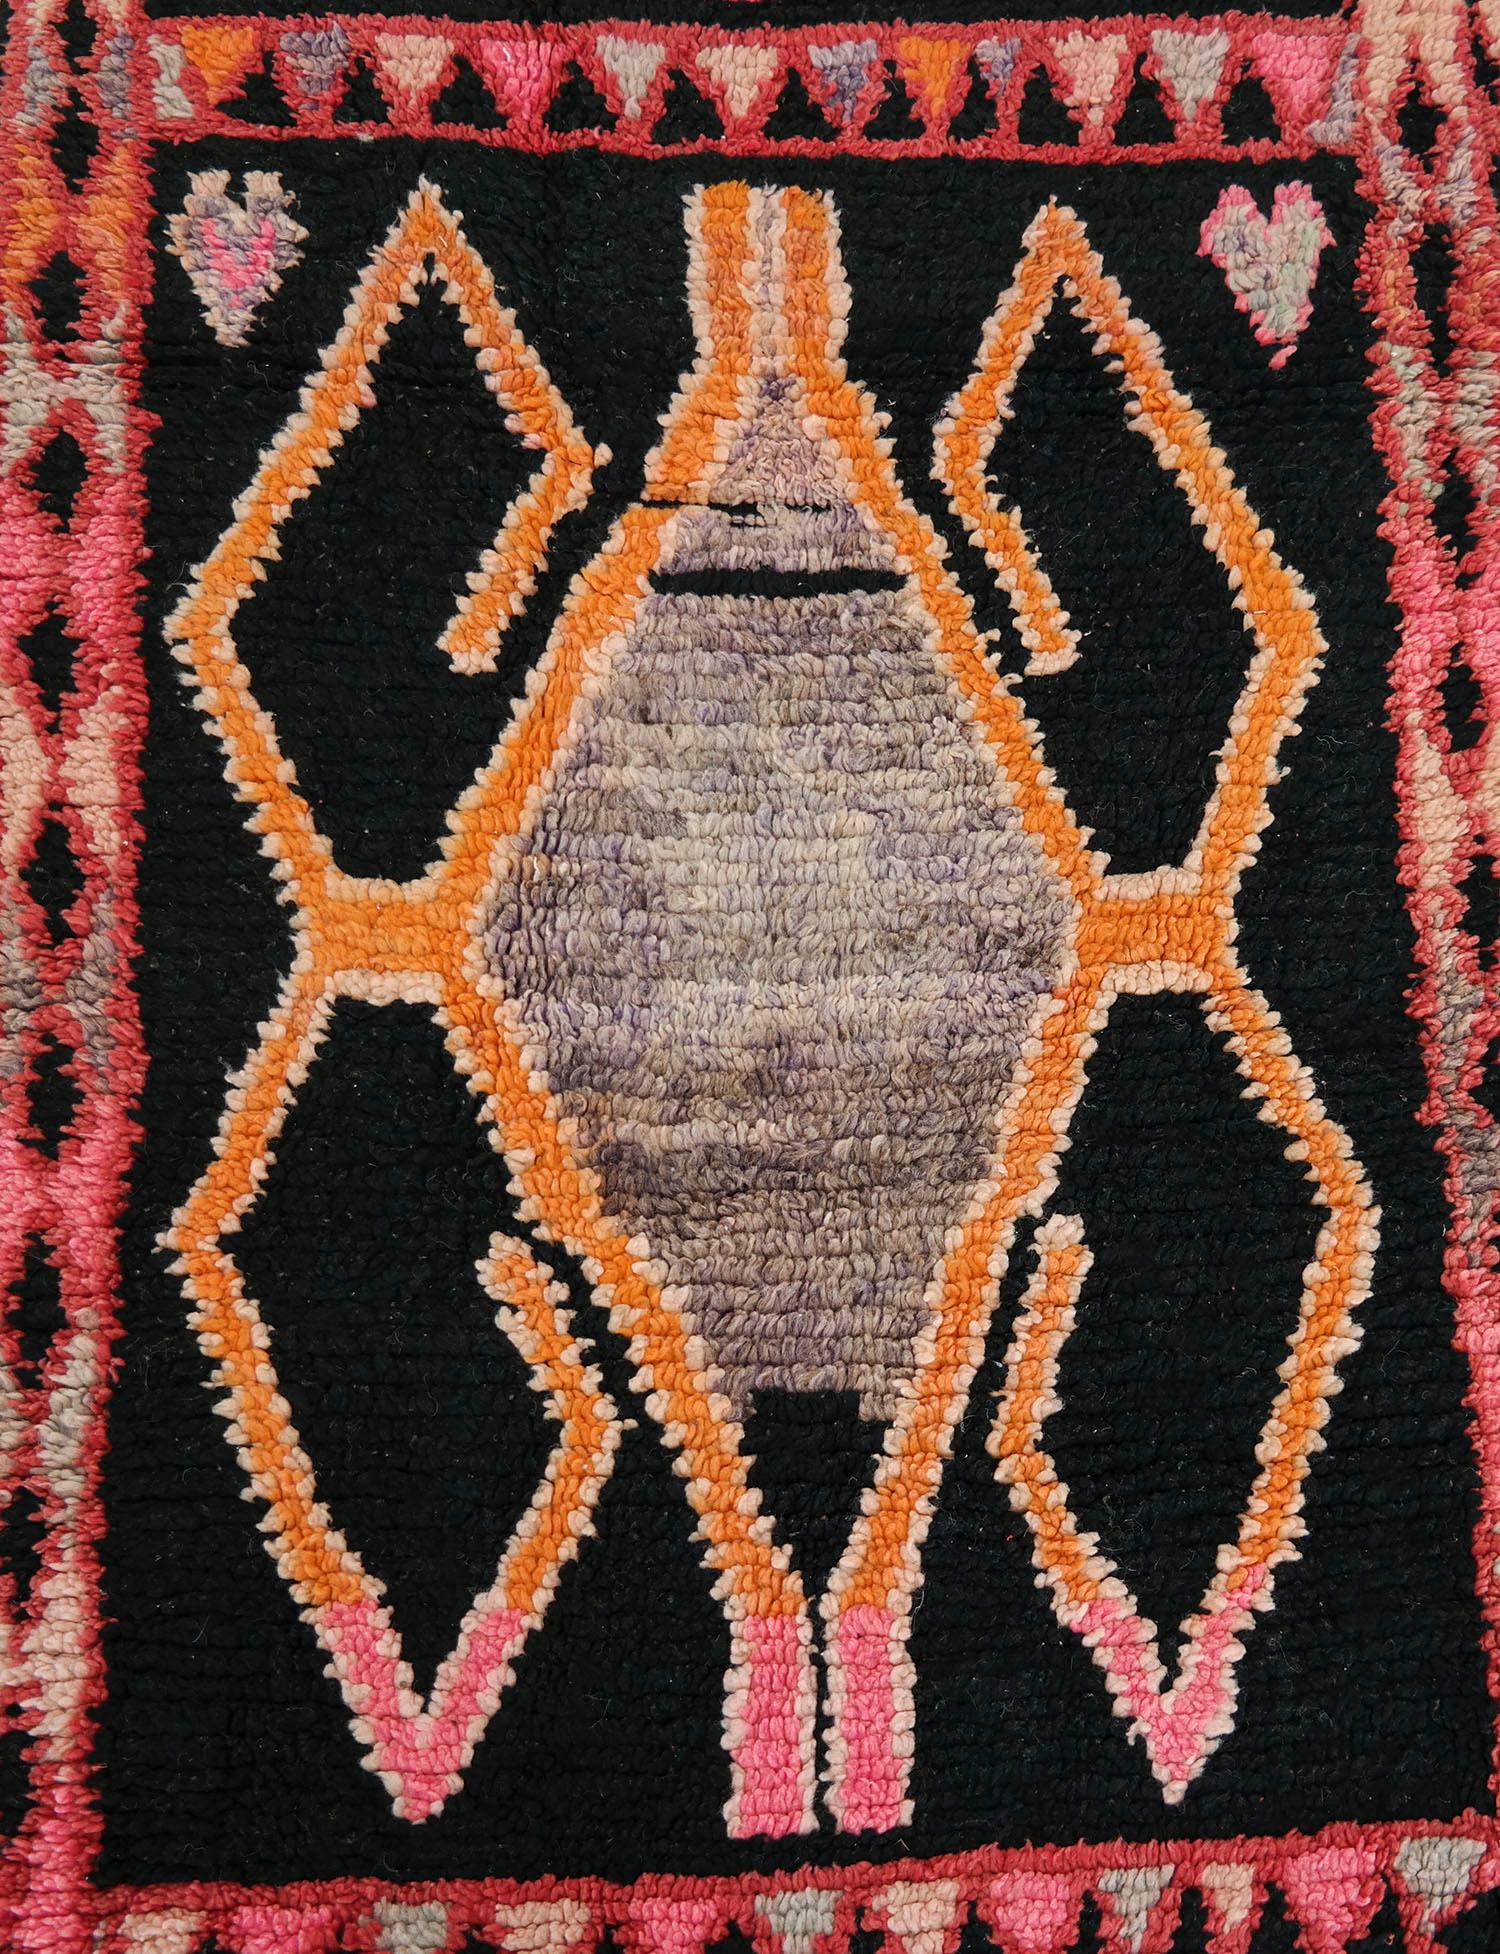 Hand-Knotted Moroccan Runner Rug, Carpet Runner, Very Long Vintage Runner Rug